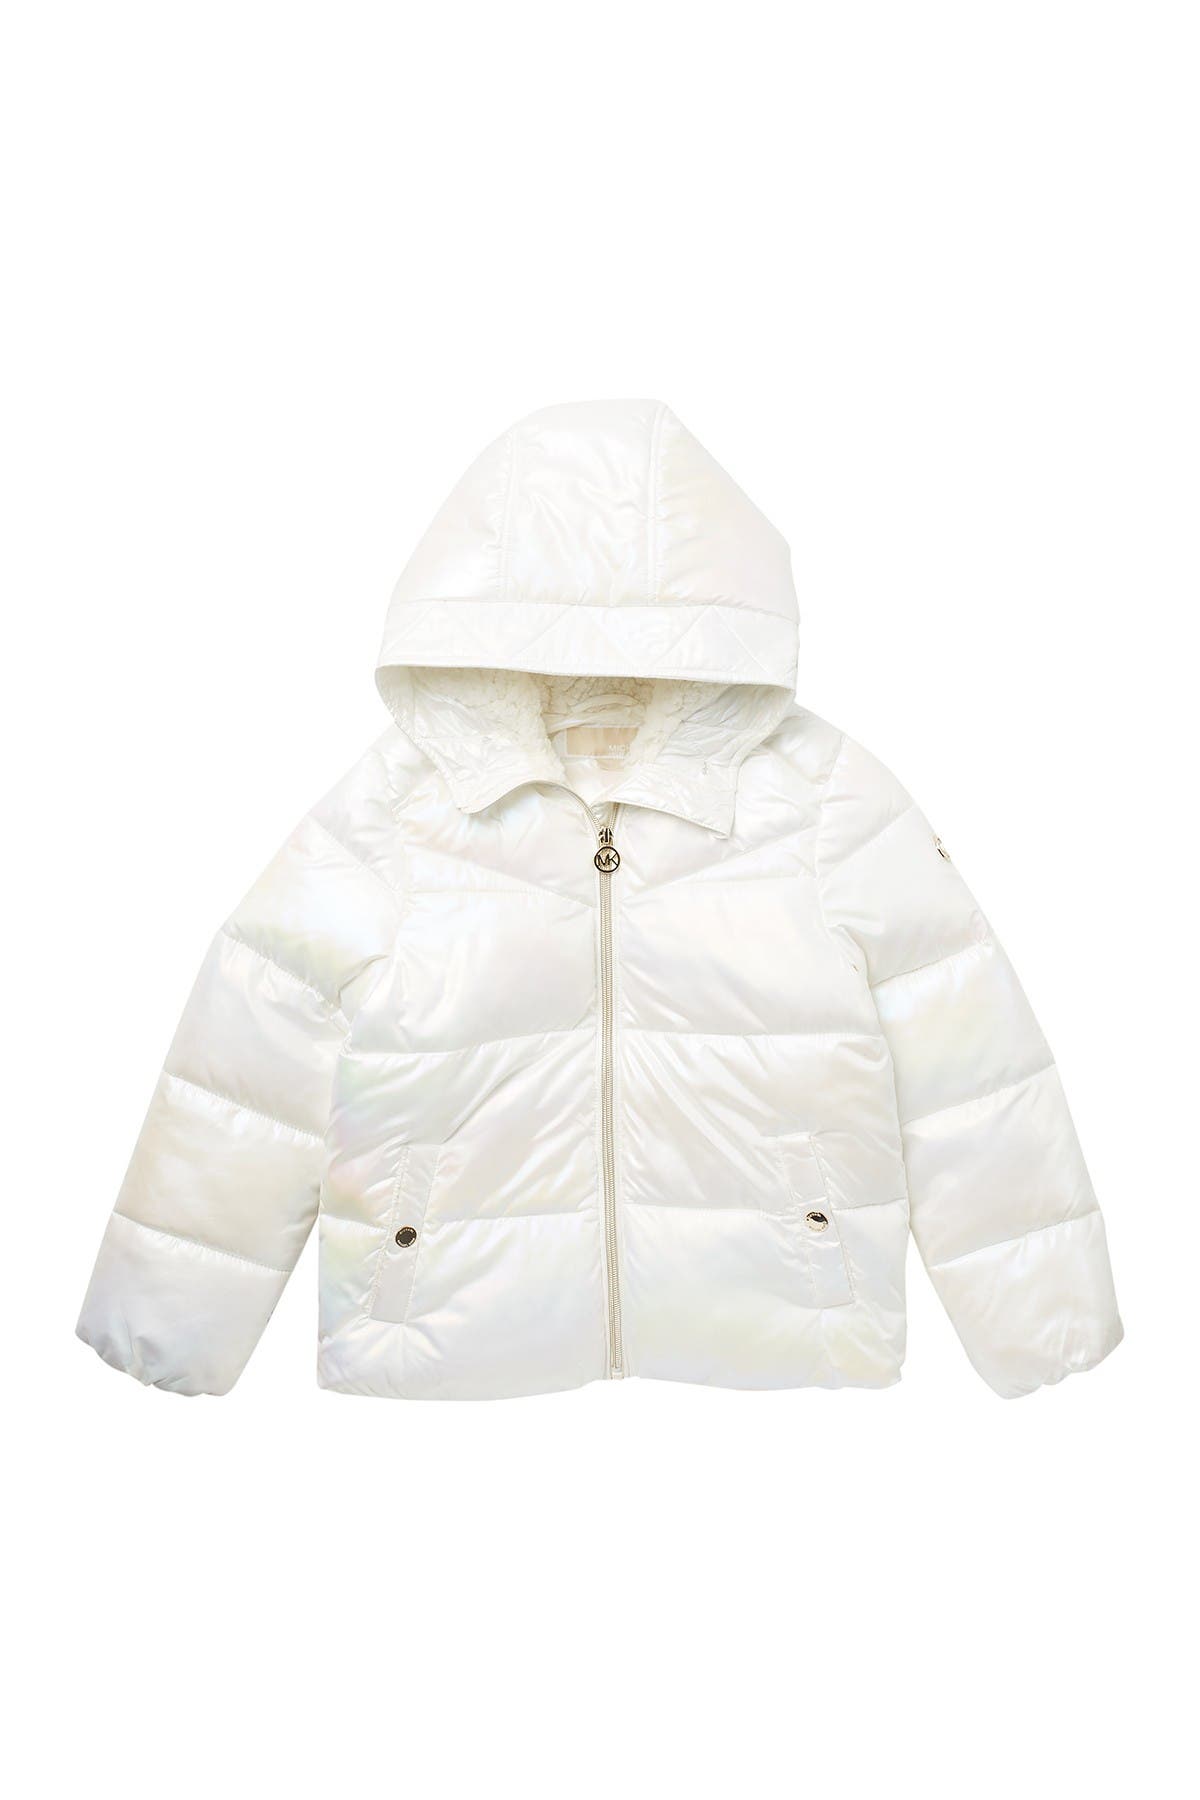 michael kors white winter coat